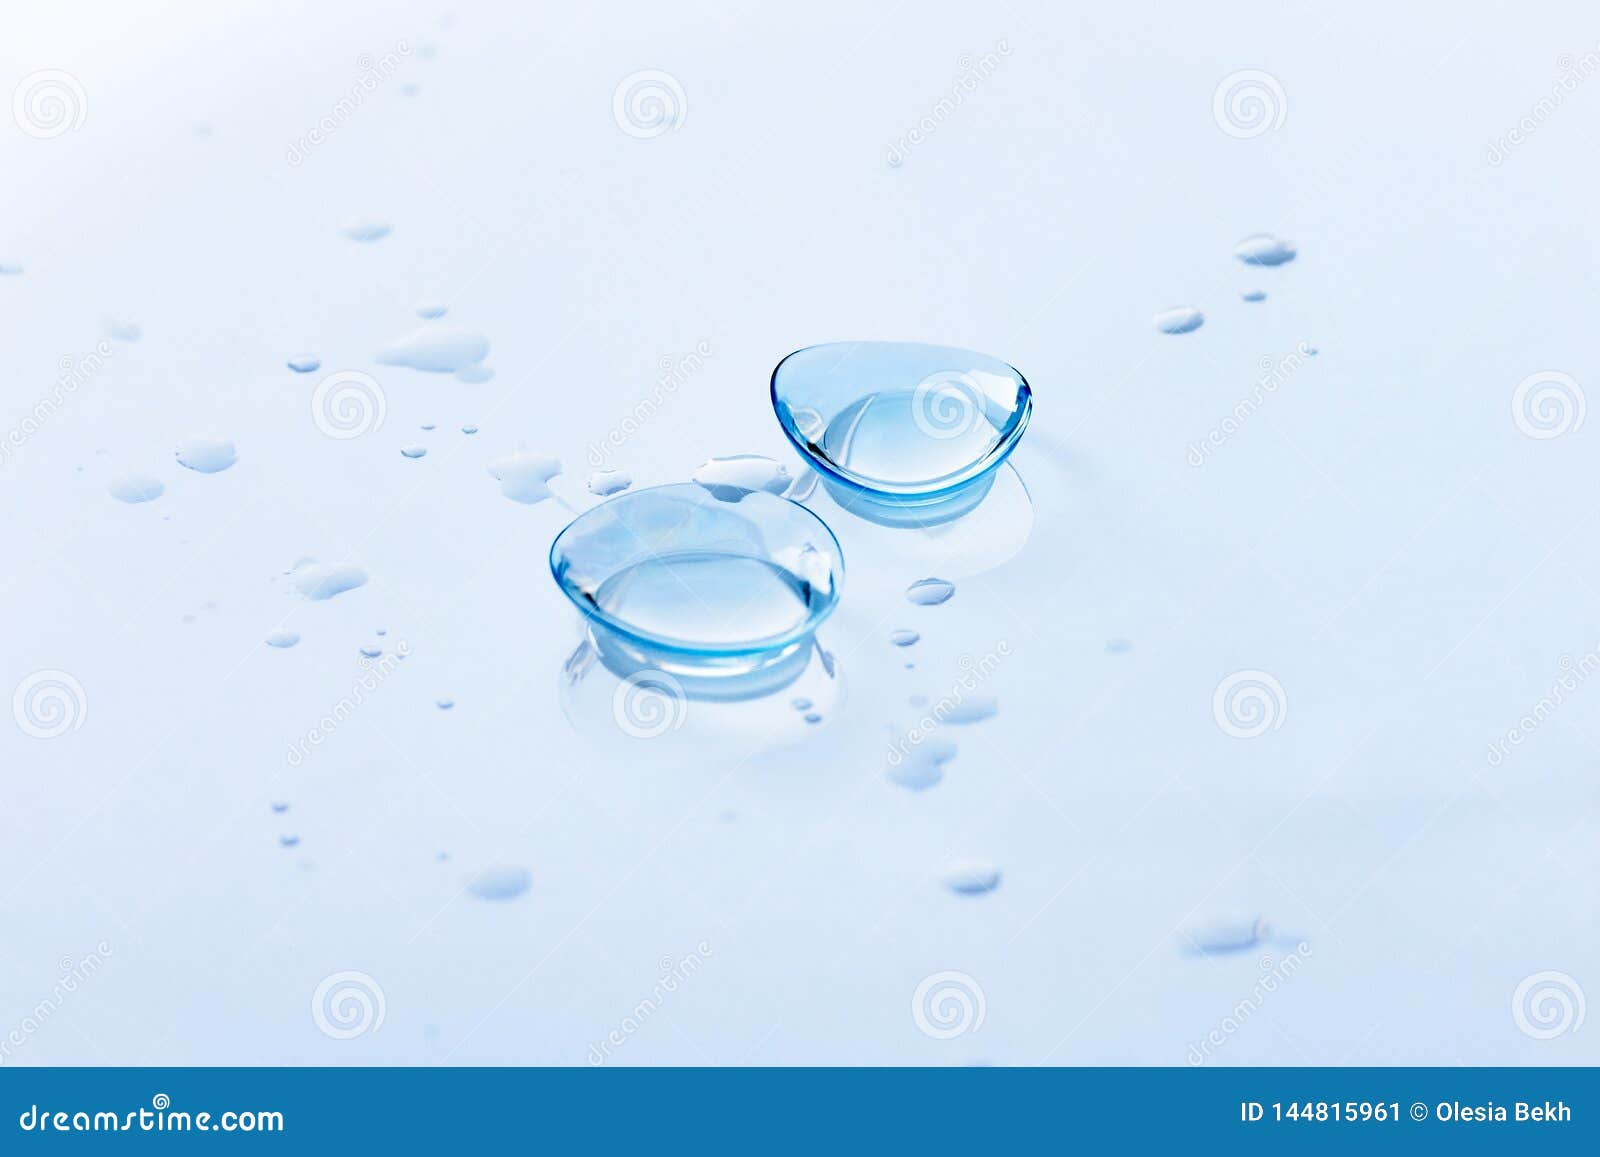 Clear Vision Incs Liquid Drop Contact Lenses